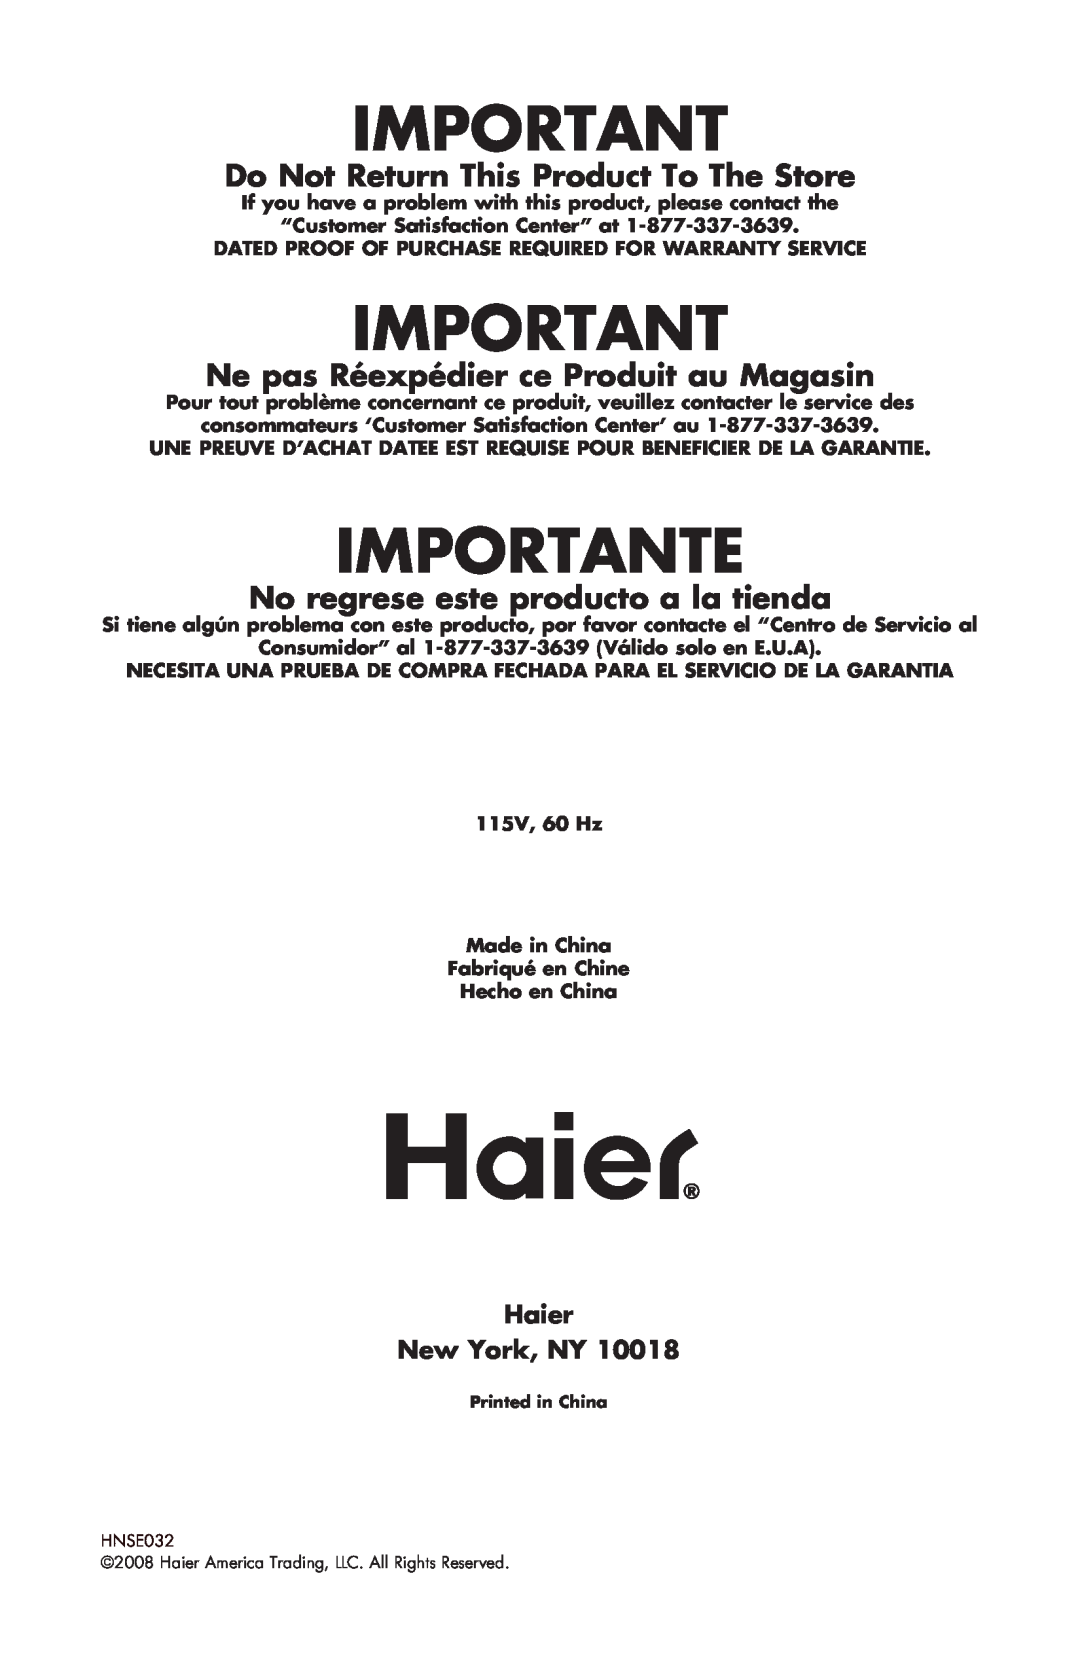 Haier COMPACT REFRIGERATOR Importante, Do Not Return This Product To The Store, Ne pas Réexpédier ce Produit au Magasin 